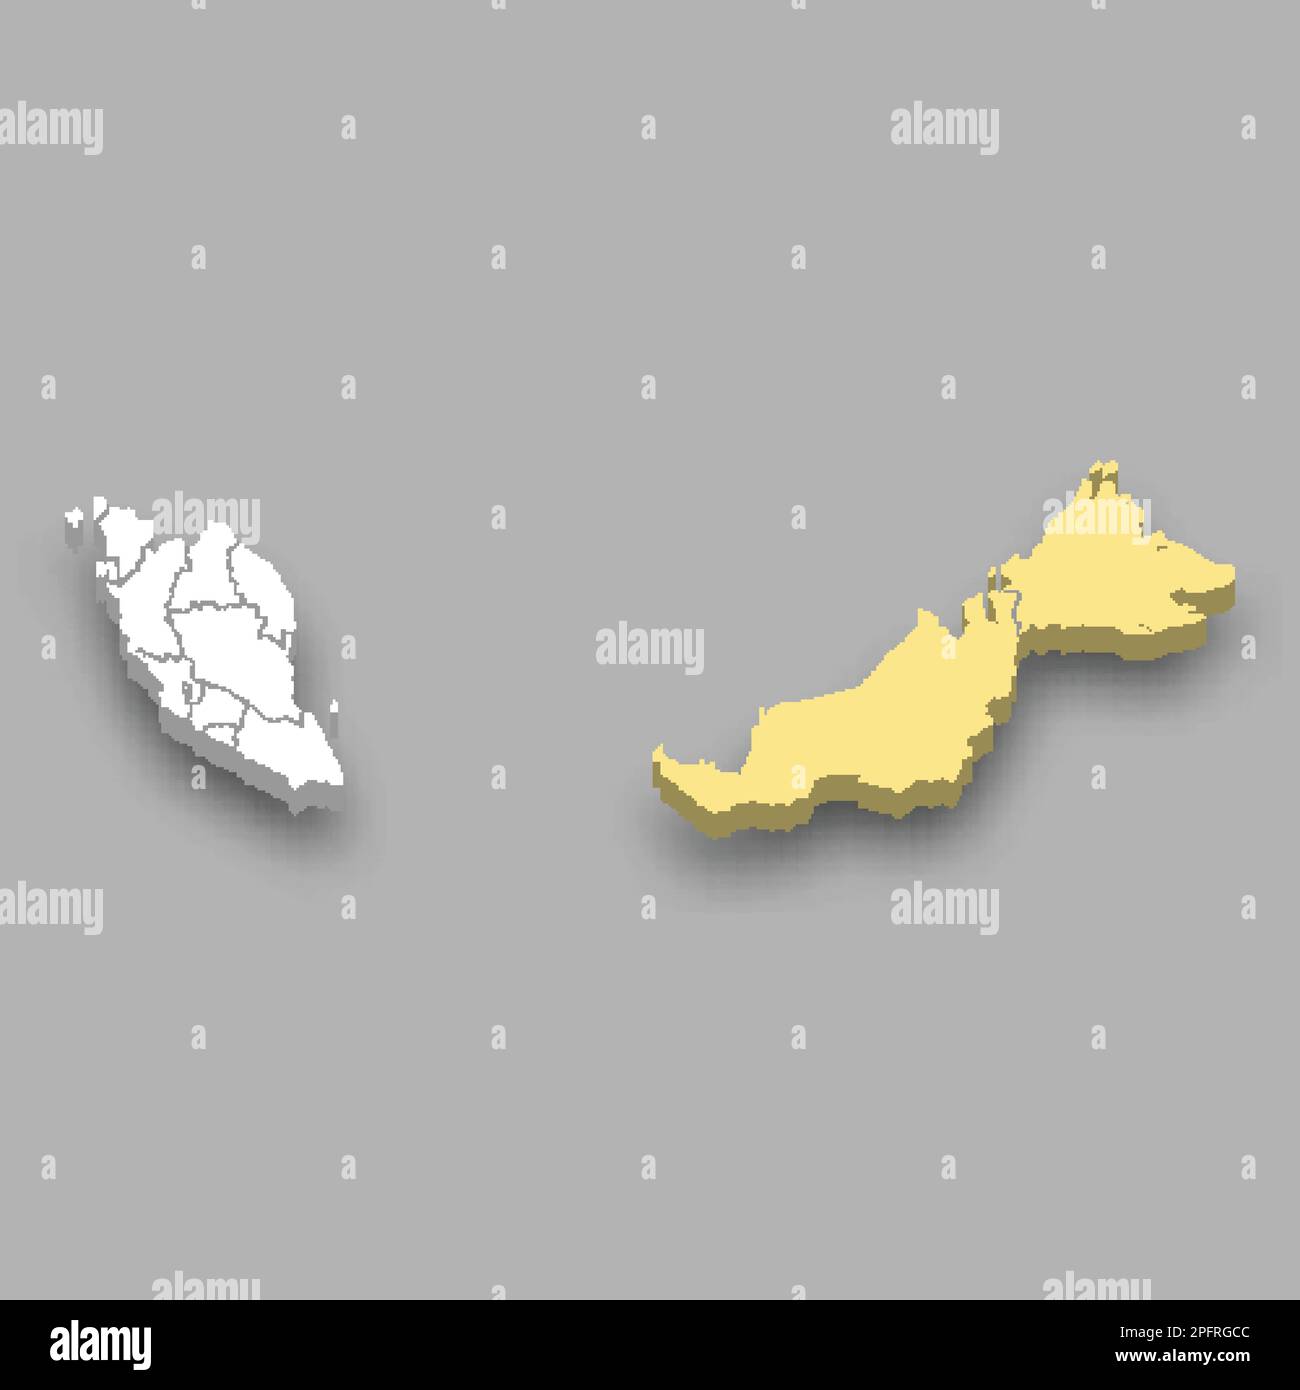 Posizione nella regione orientale all'interno della mappa isometrica 3D della Malesia Illustrazione Vettoriale